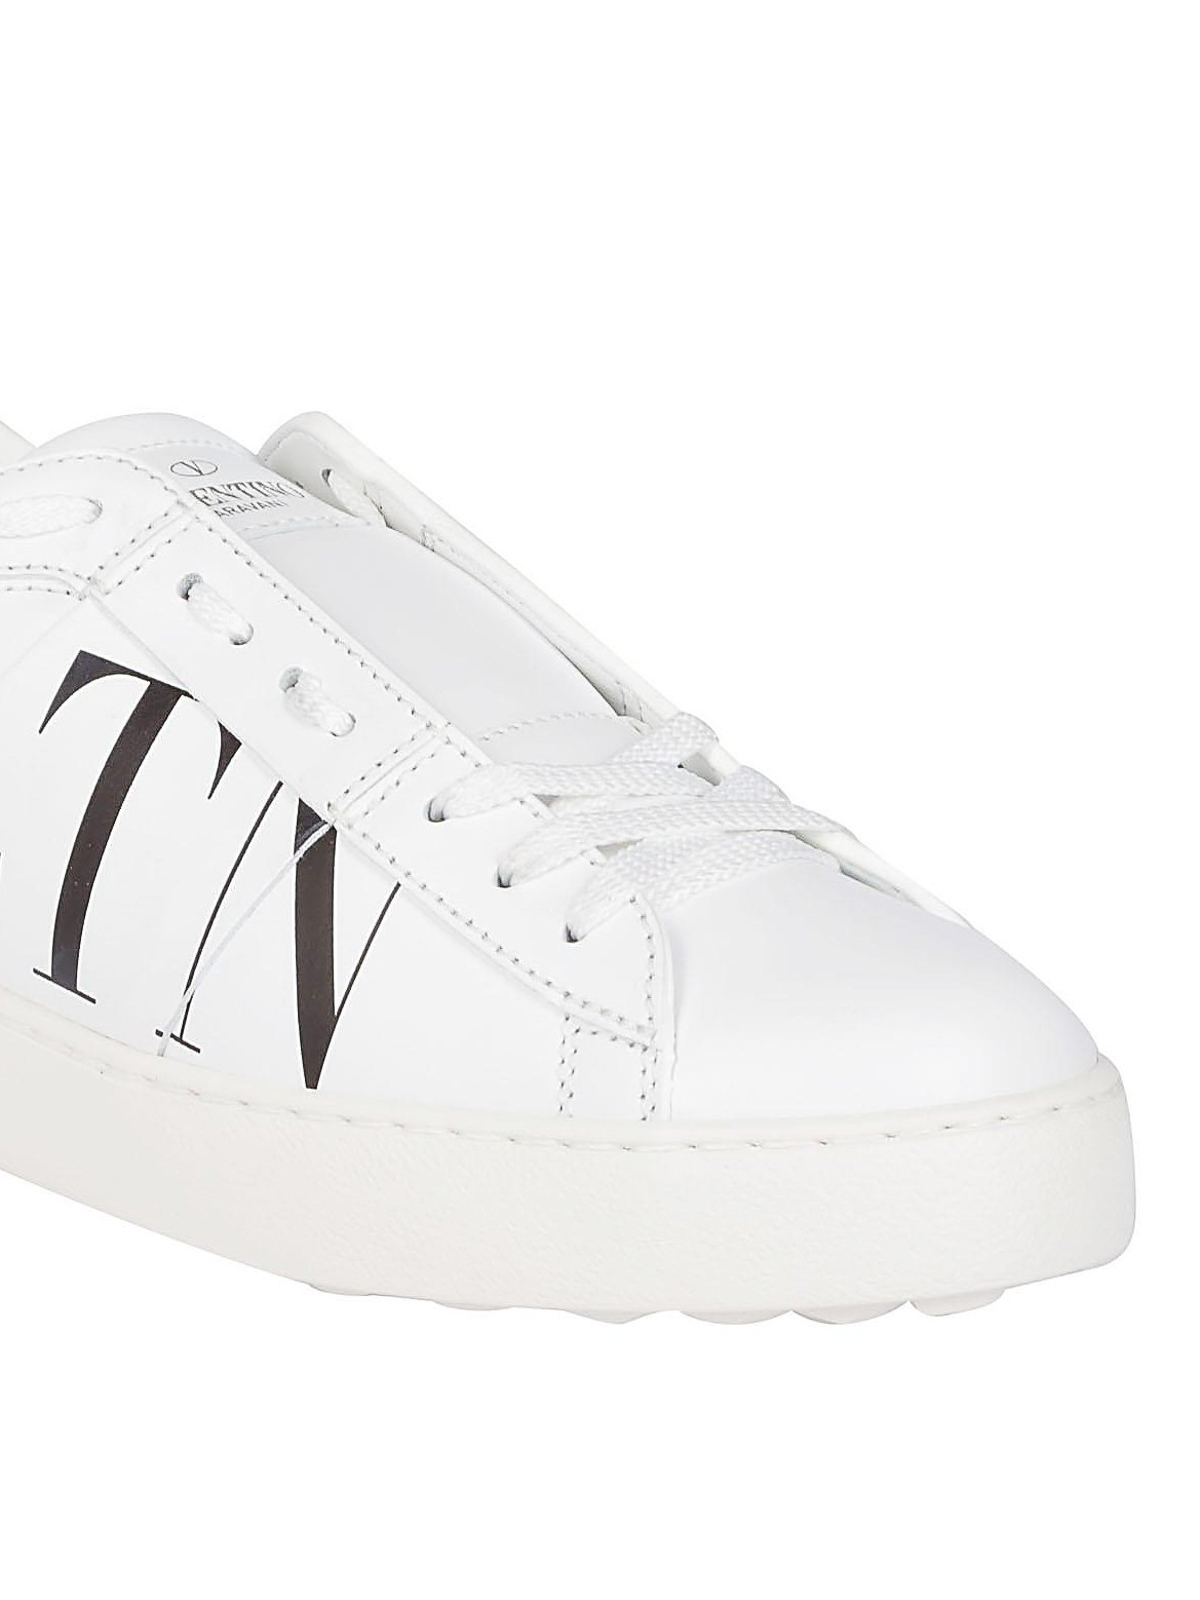 vltn white sneakers